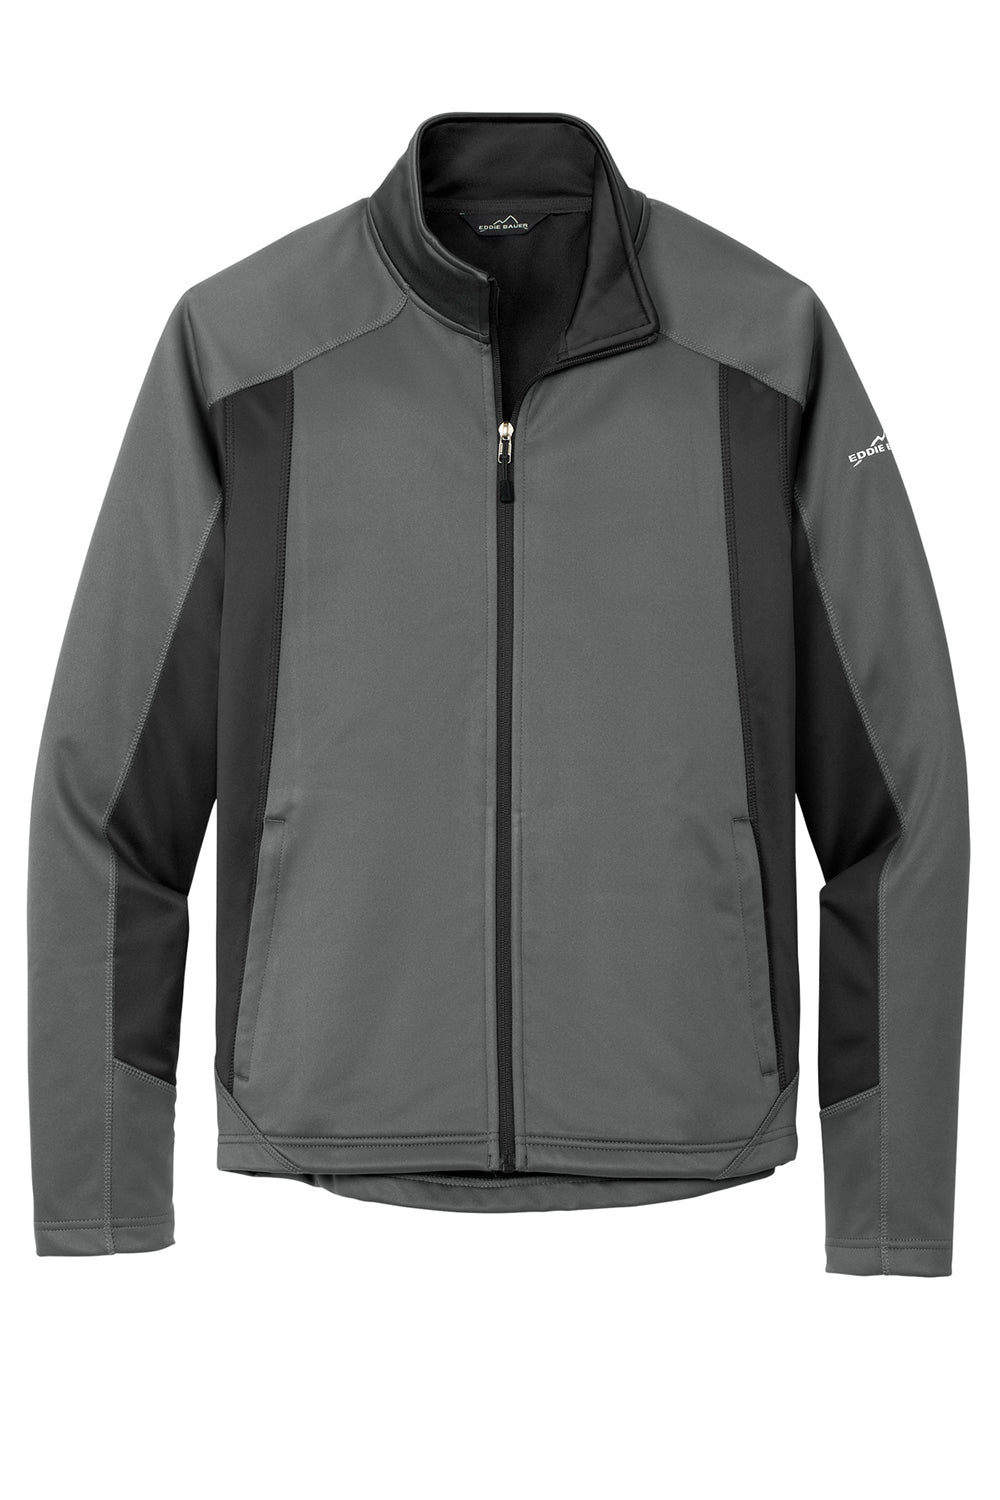 Eddie Bauer EB542 Mens Trail Water Resistant Full Zip Jacket Metal Grey Flat Front